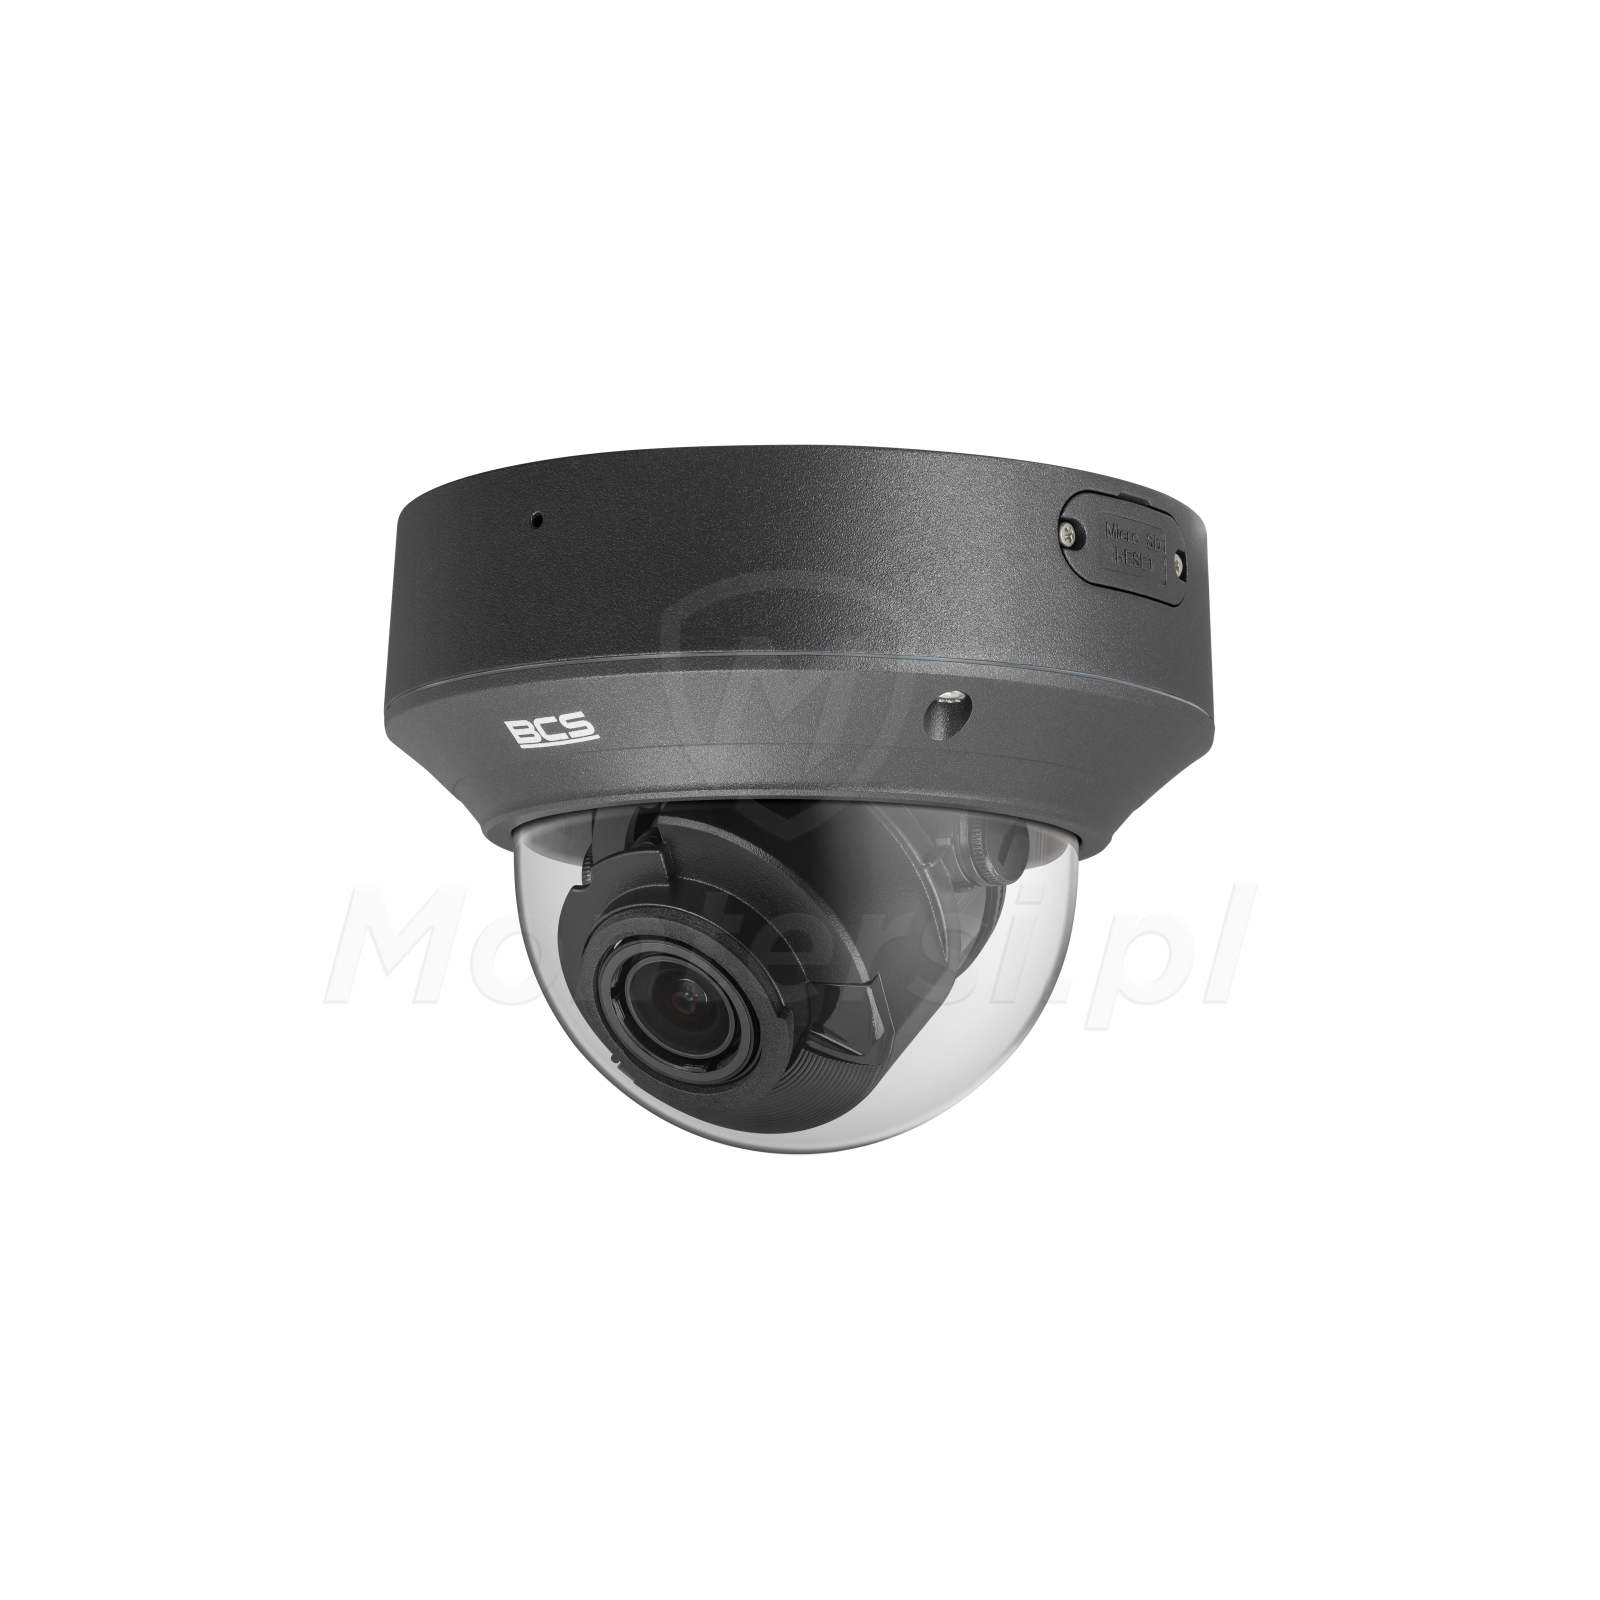 Wandaloodporna kamera IP BCS-P-DIP58VSR4-Ai2-G